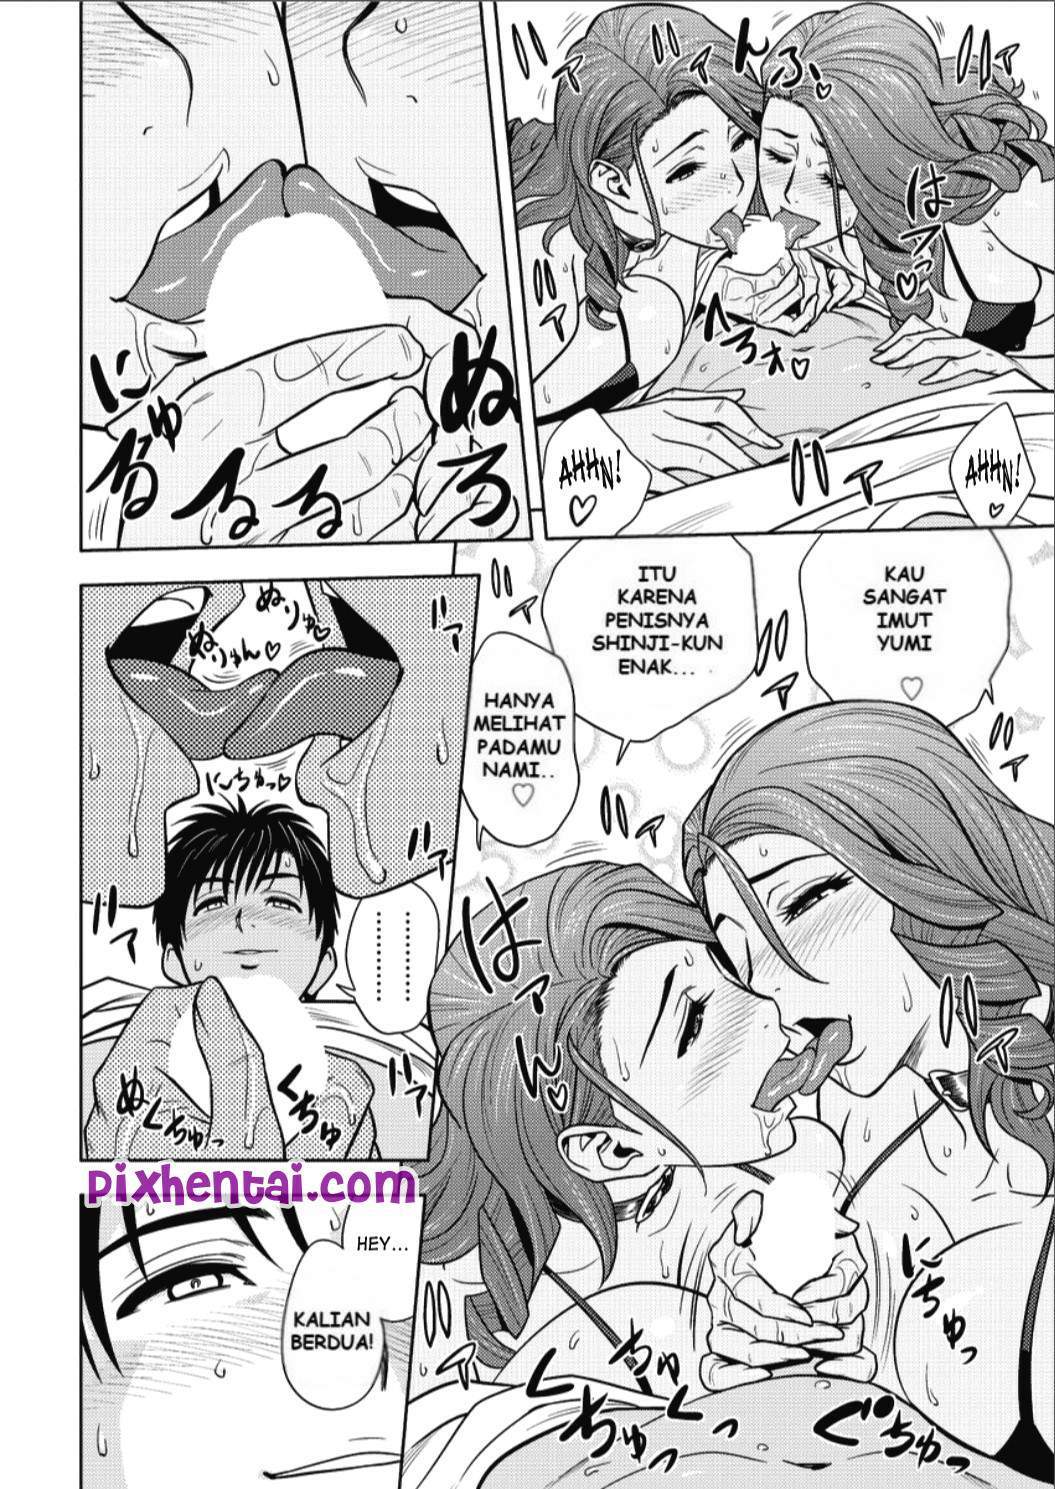 Komik hentai xxx manga sex bokep sesuatu yang dapat memuaskan tubuh dan pikiran 12